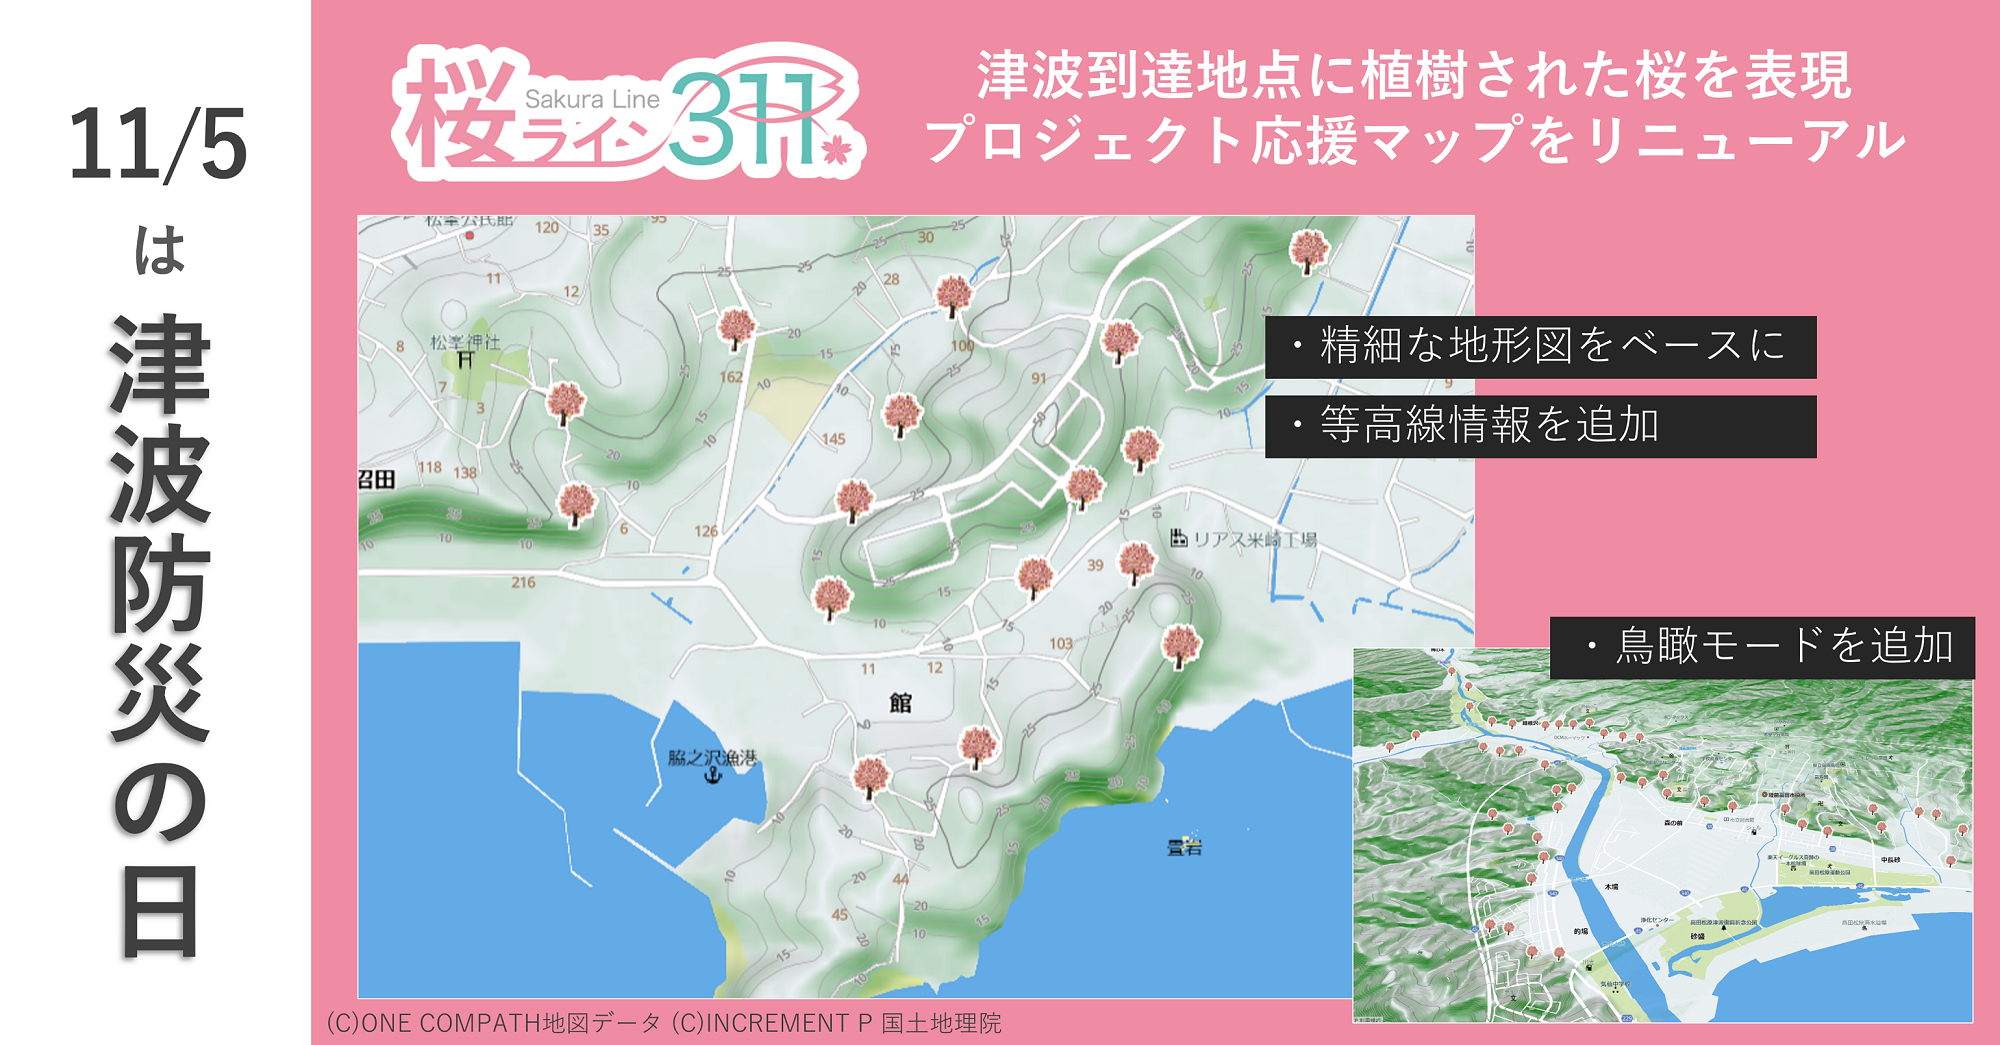 【11/5津波防災の日】陸前高田市「桜ライン311プロジェクト」地図刷新